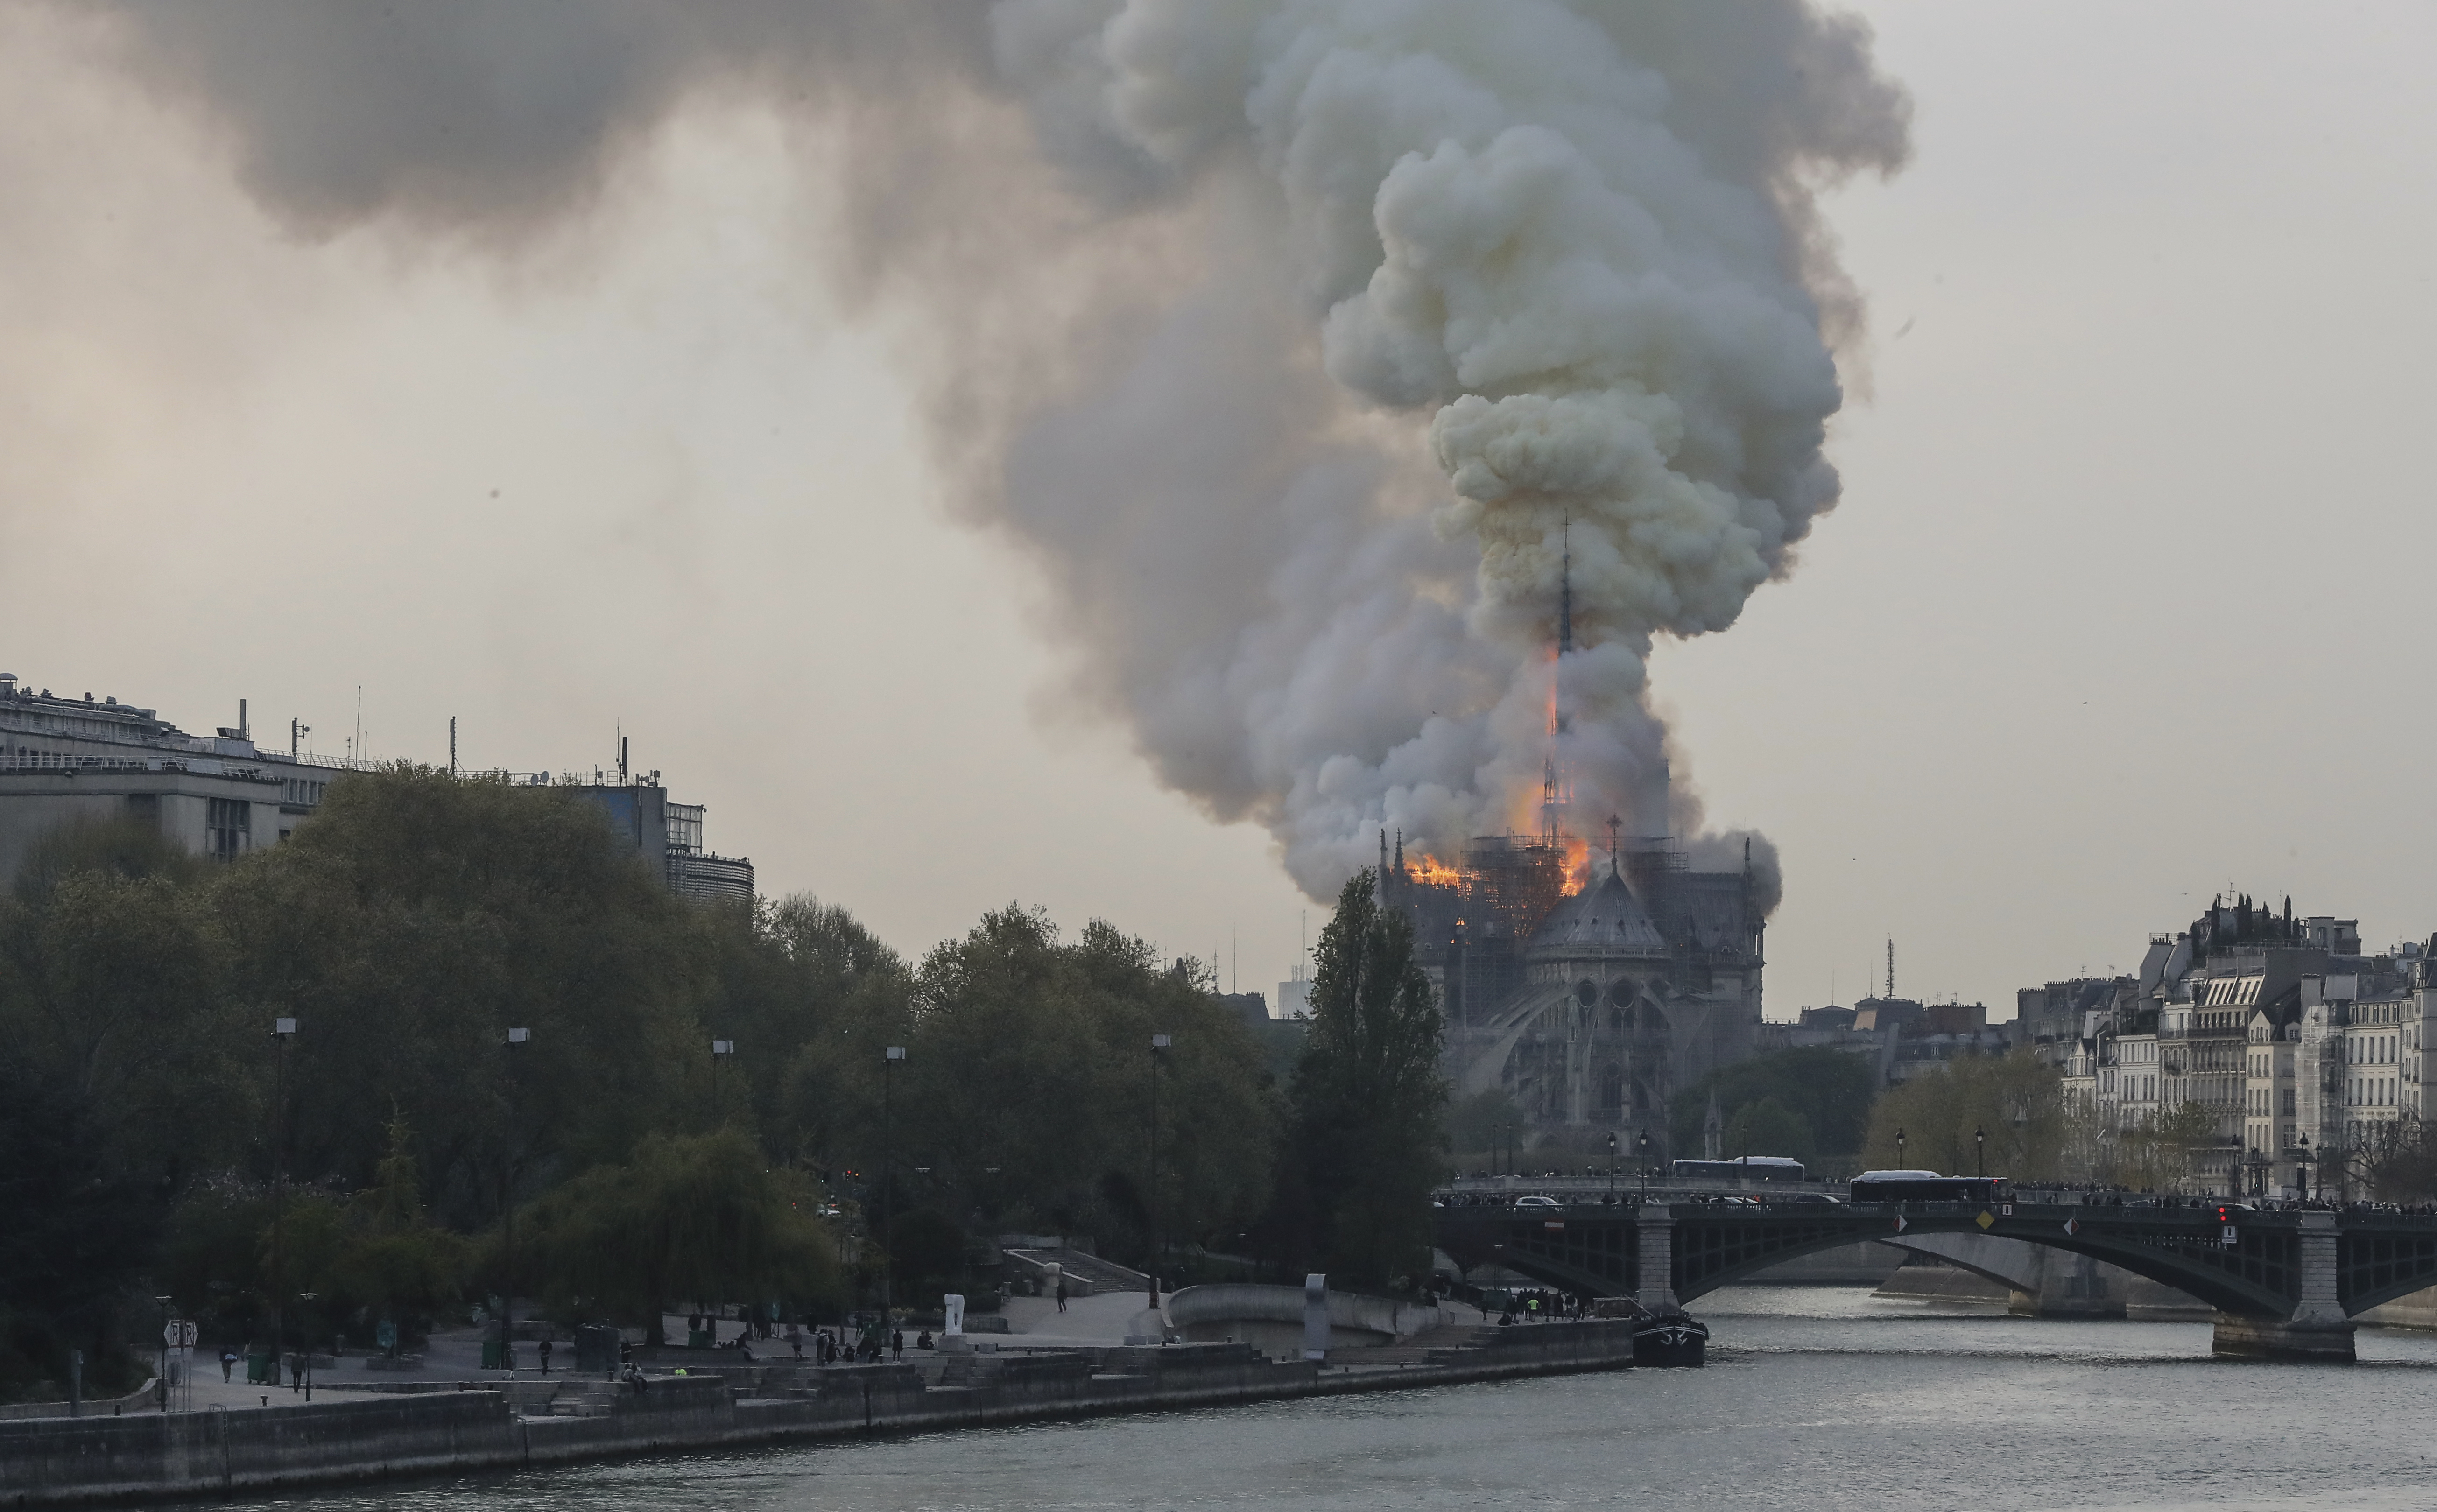 Сгорел нотр. Пожар в соборе Парижской Богоматери (2019). В Париже сгорел Нотр-дам-де-пари. Нотр дам 2019 пожар.